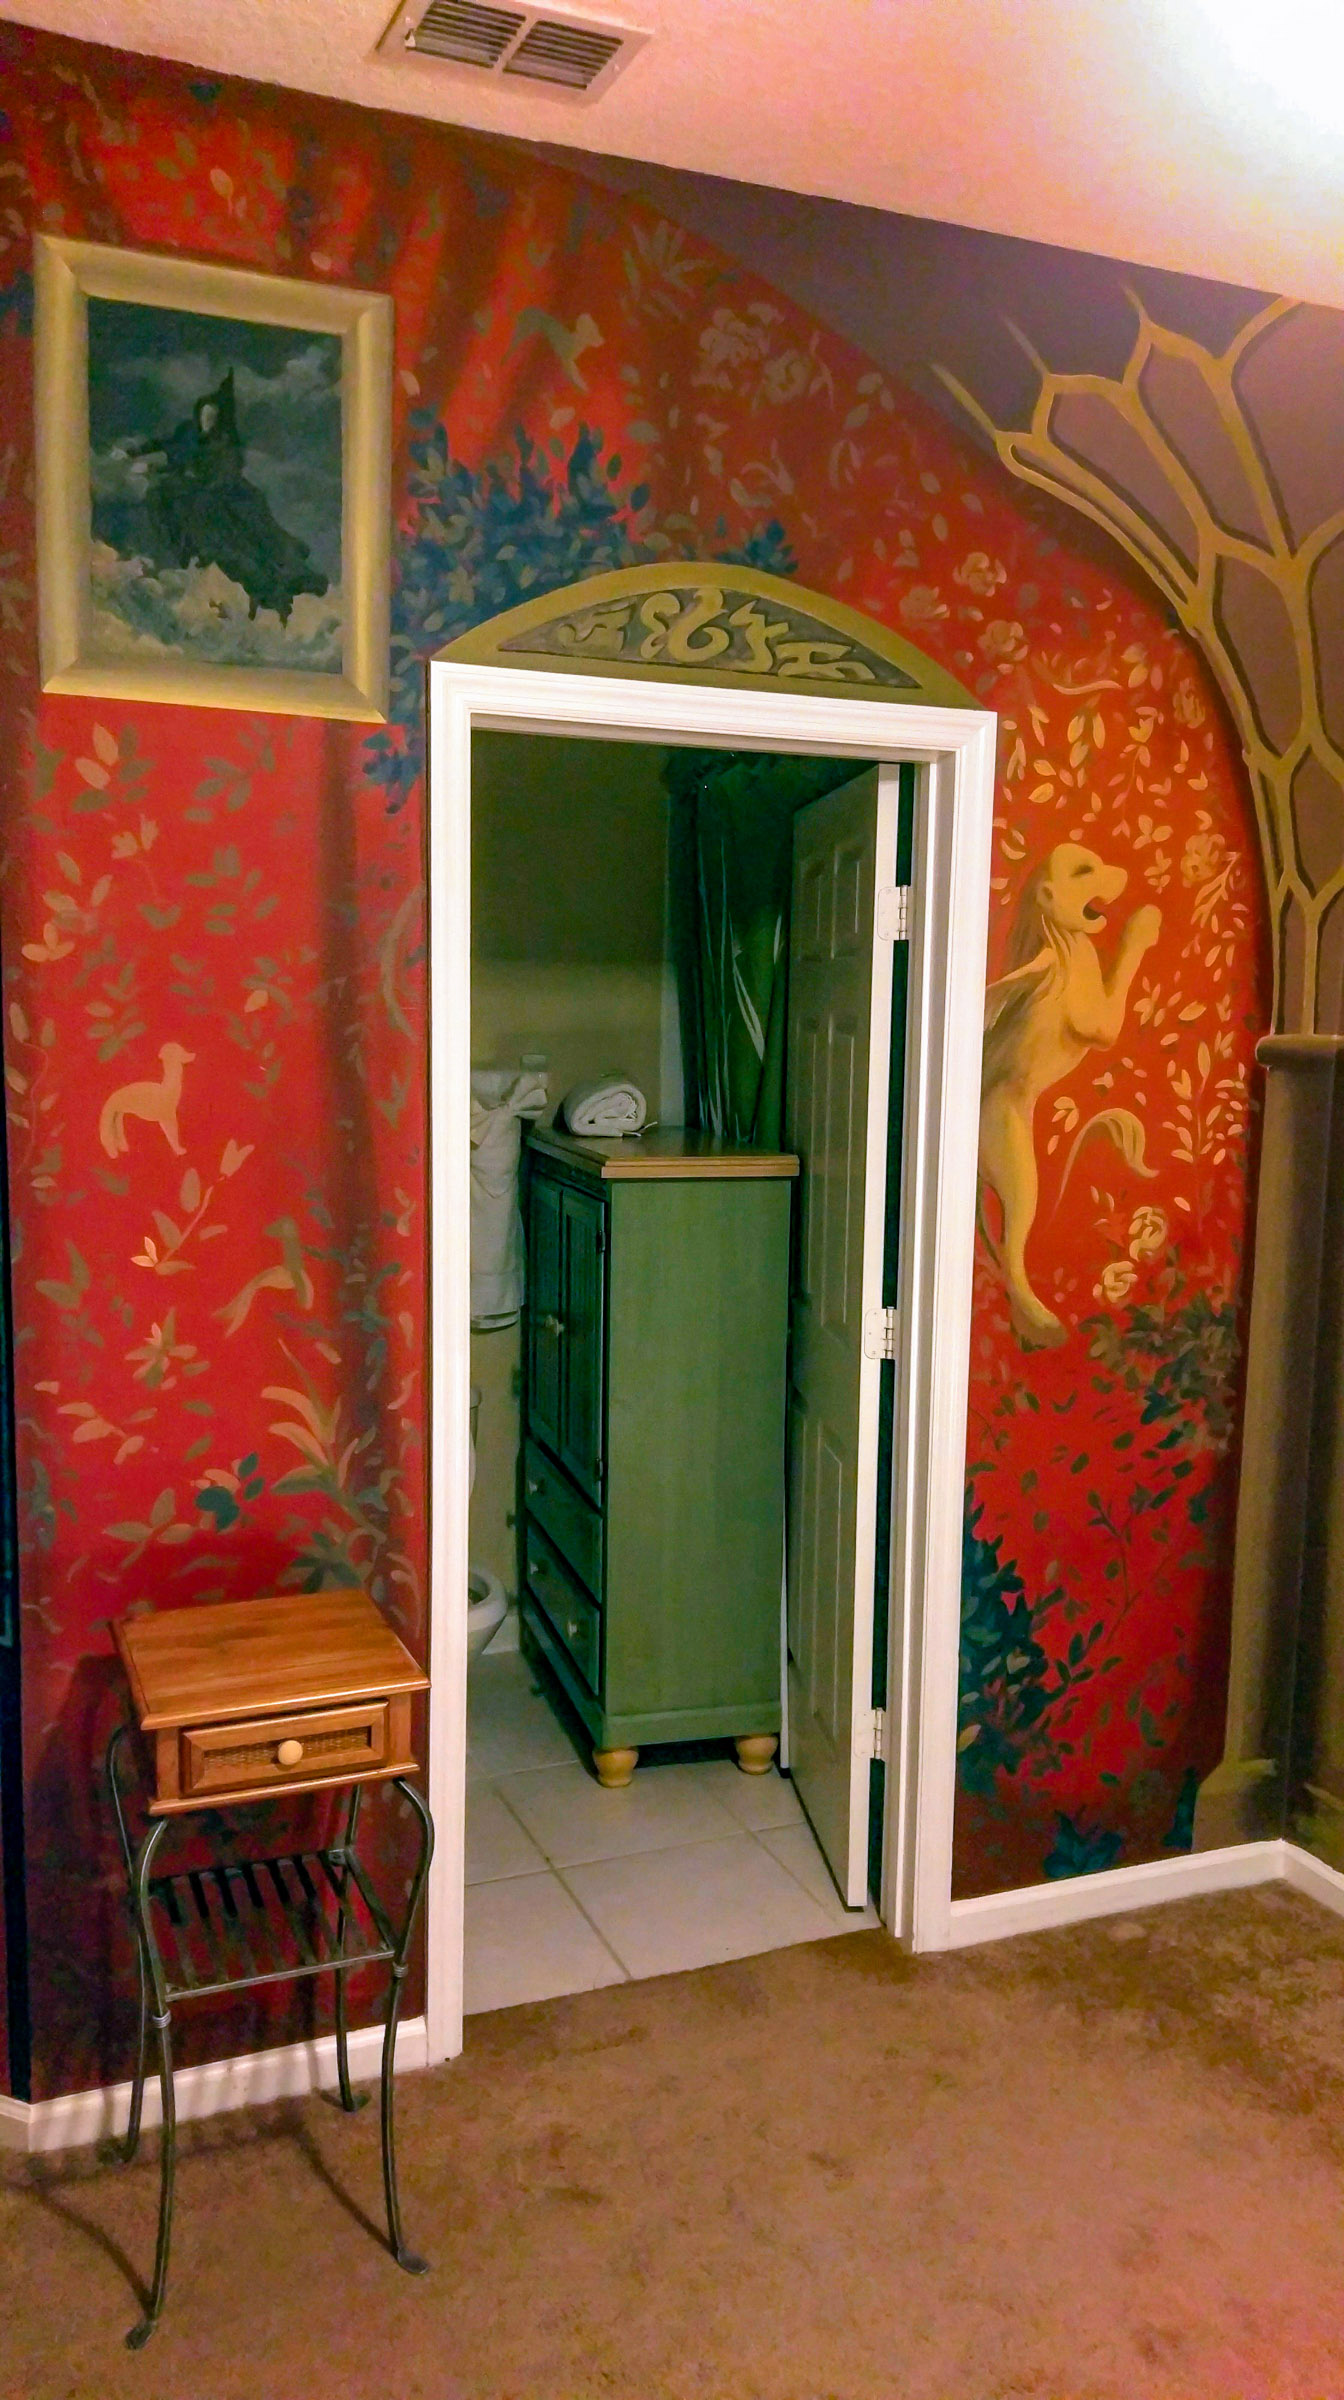 Harry Potter Bedroom mural florida, en suite entrance